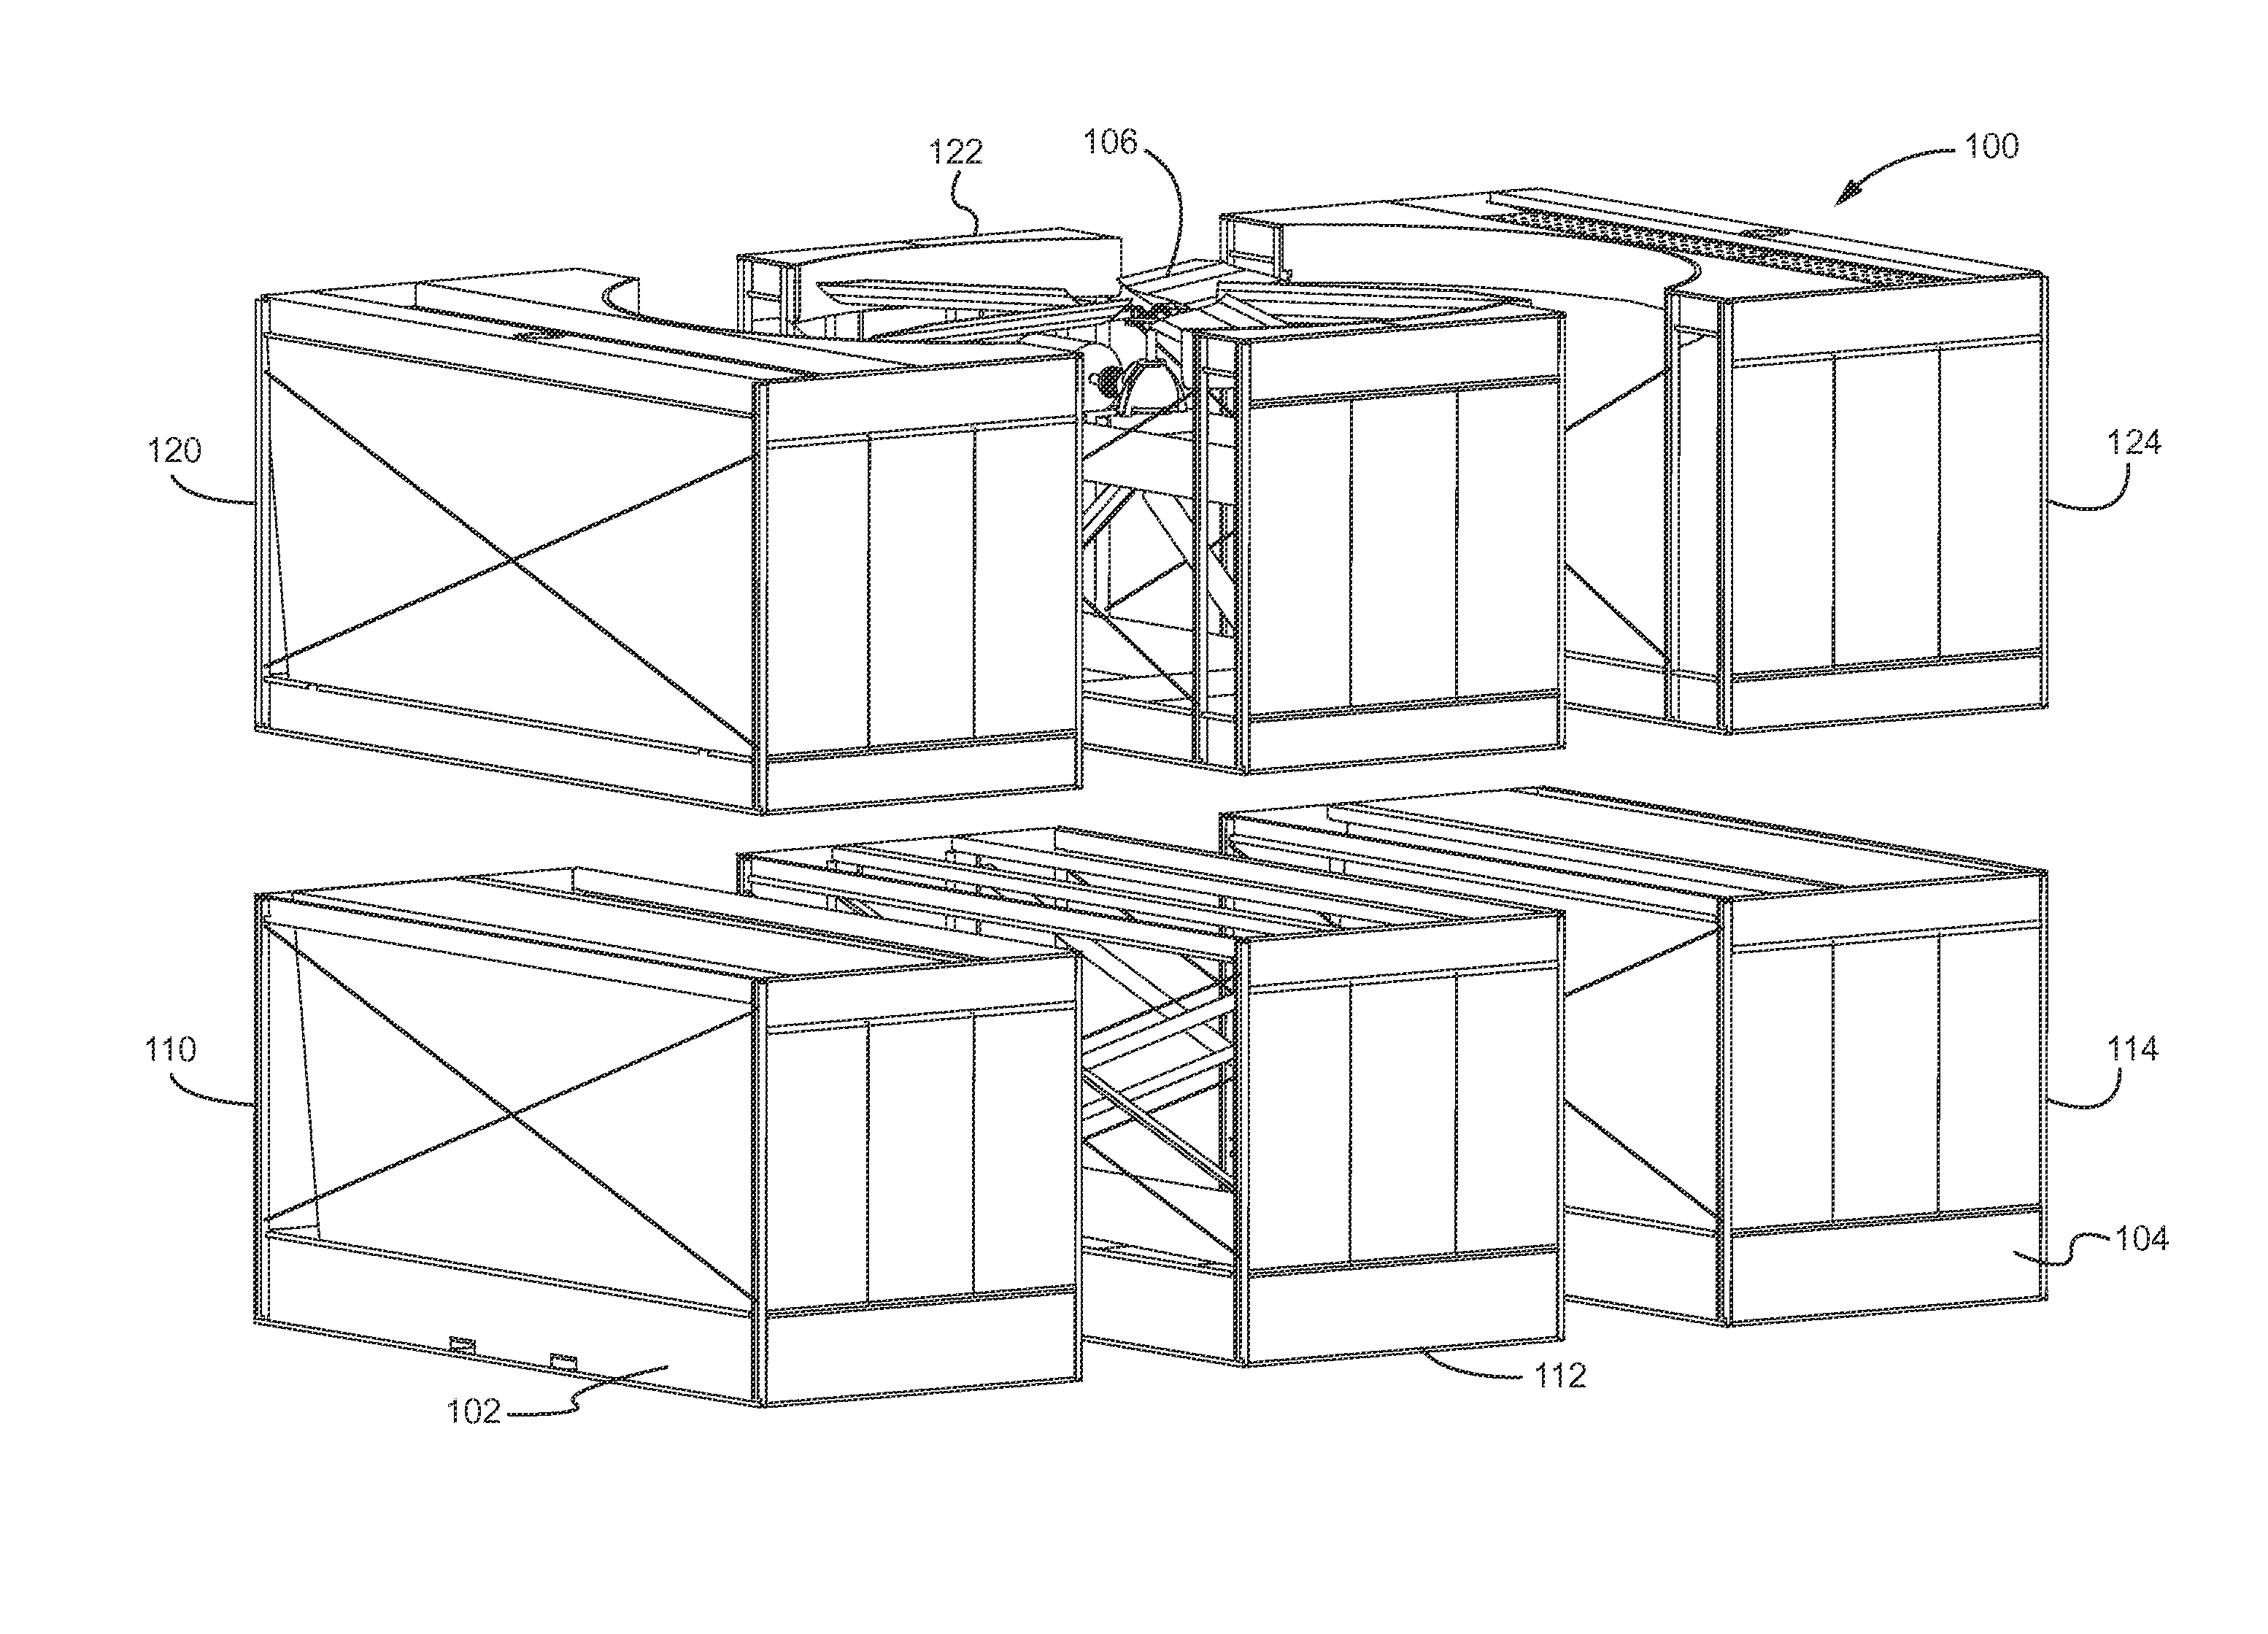 Modular heat exchange tower and method of assembling same